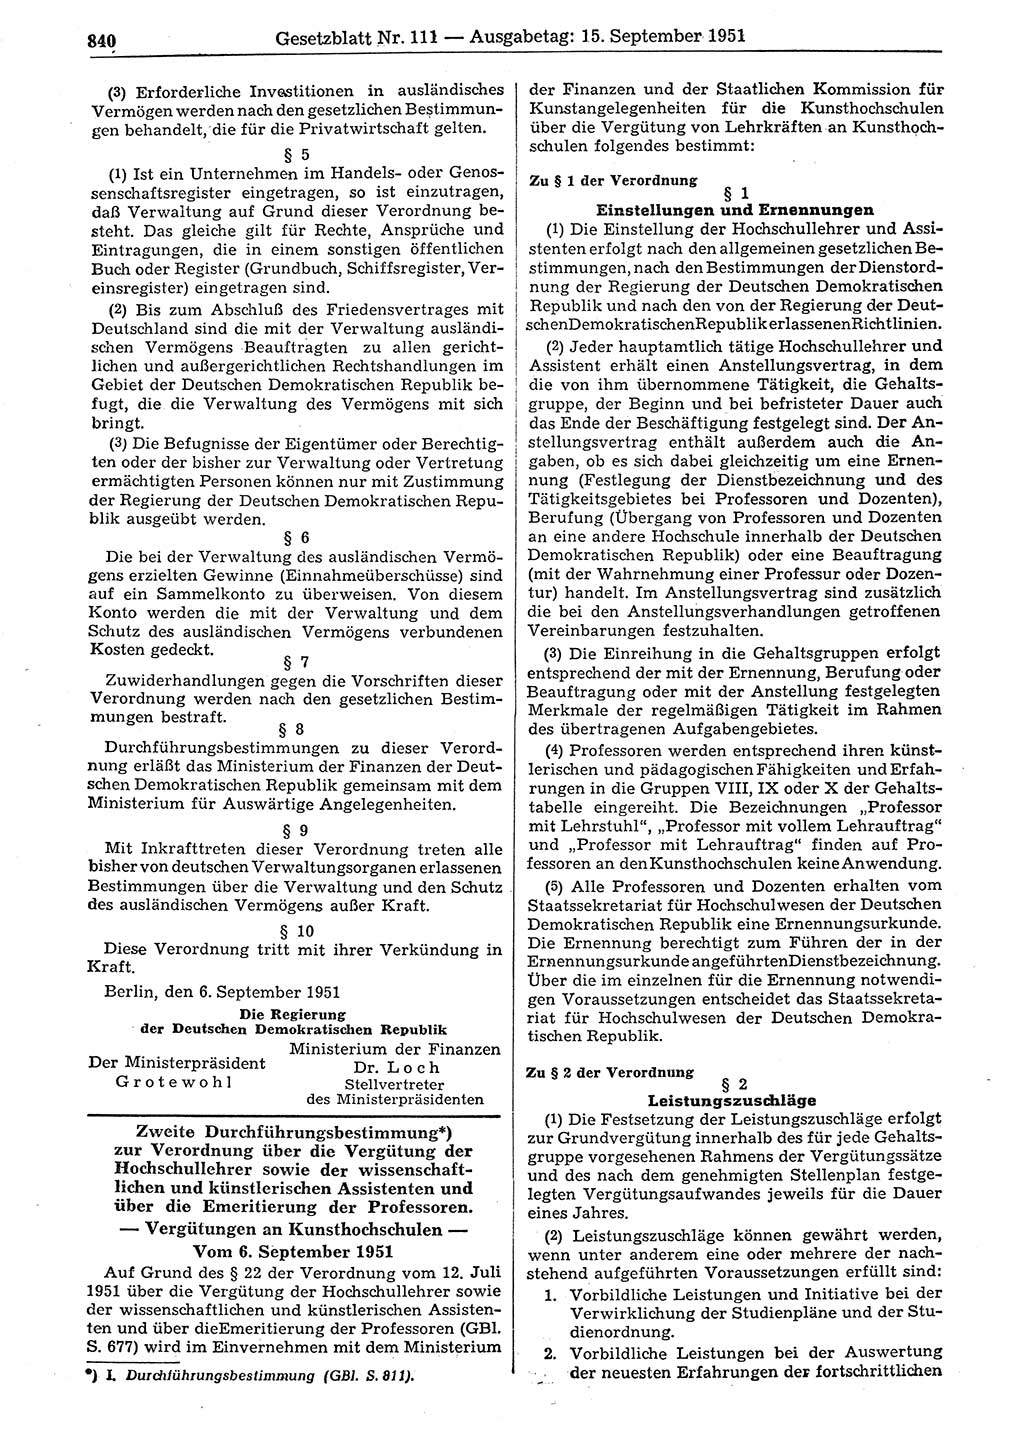 Gesetzblatt (GBl.) der Deutschen Demokratischen Republik (DDR) 1951, Seite 840 (GBl. DDR 1951, S. 840)